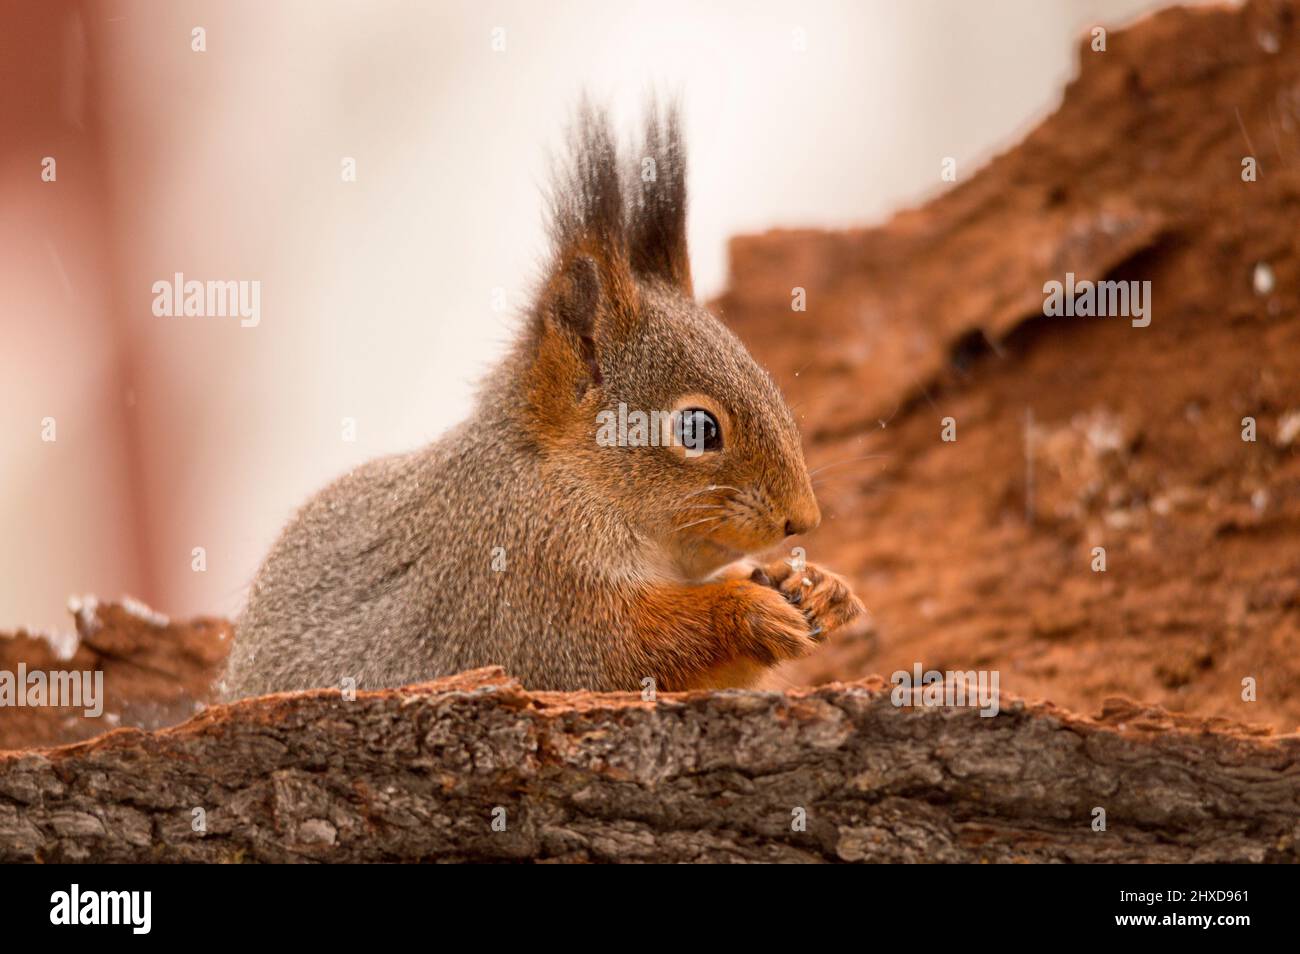 gros plan de l'écureuil qui est debout dans un tronc d'arbre pendant qu'il neige un peu Banque D'Images